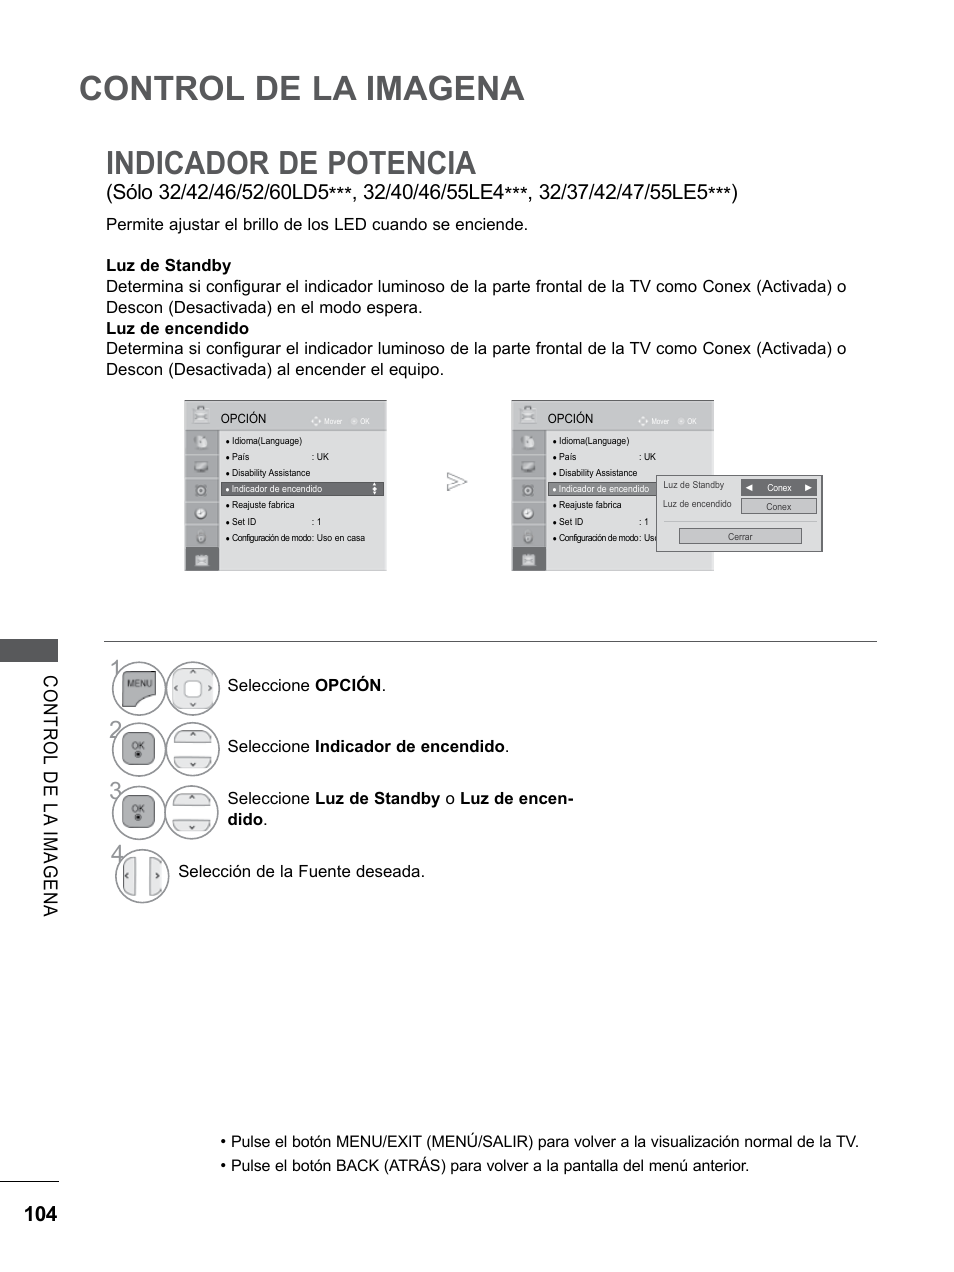 Indicador de potencia, Control de la imagena | LG 55LE5300 Manual del usuario | Página 152 / 206